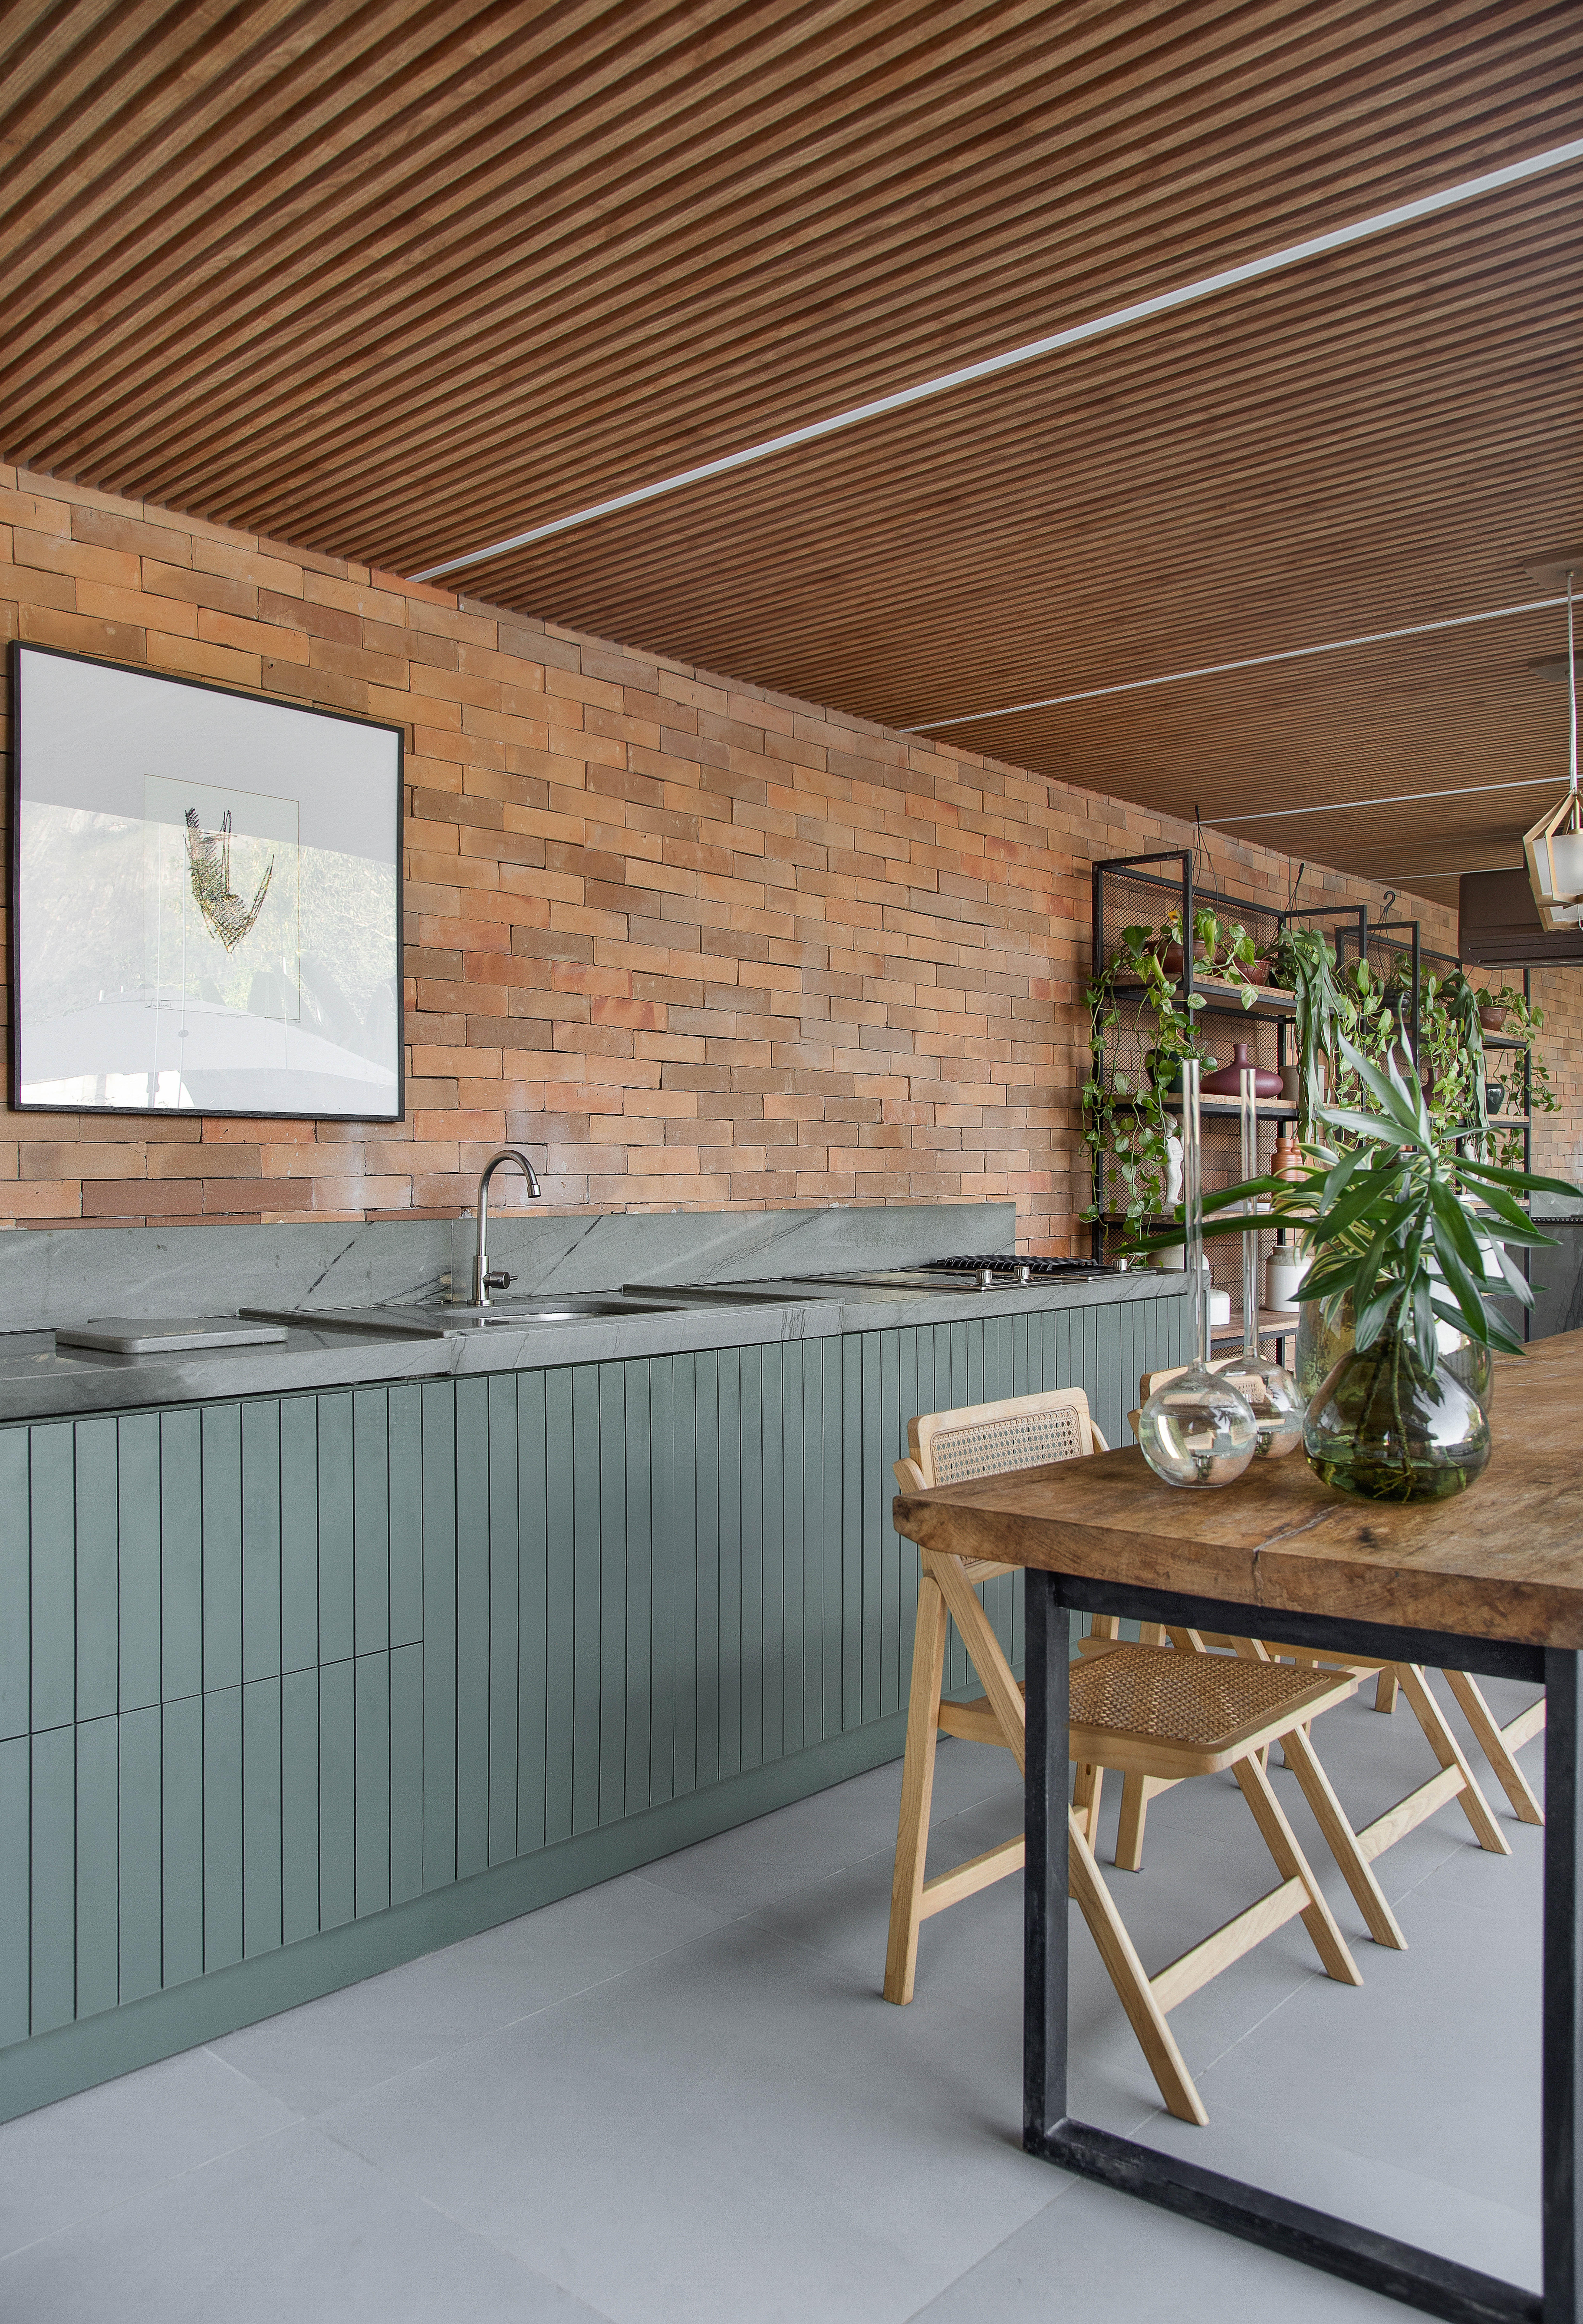 Casa de 300 m² tem cozinha verde oliva e área gourmet em contêiner. Projeto de Lana Rocha. Na foto, área gourmet com parede de tijolinhos, mesa de madeira e armário verde.